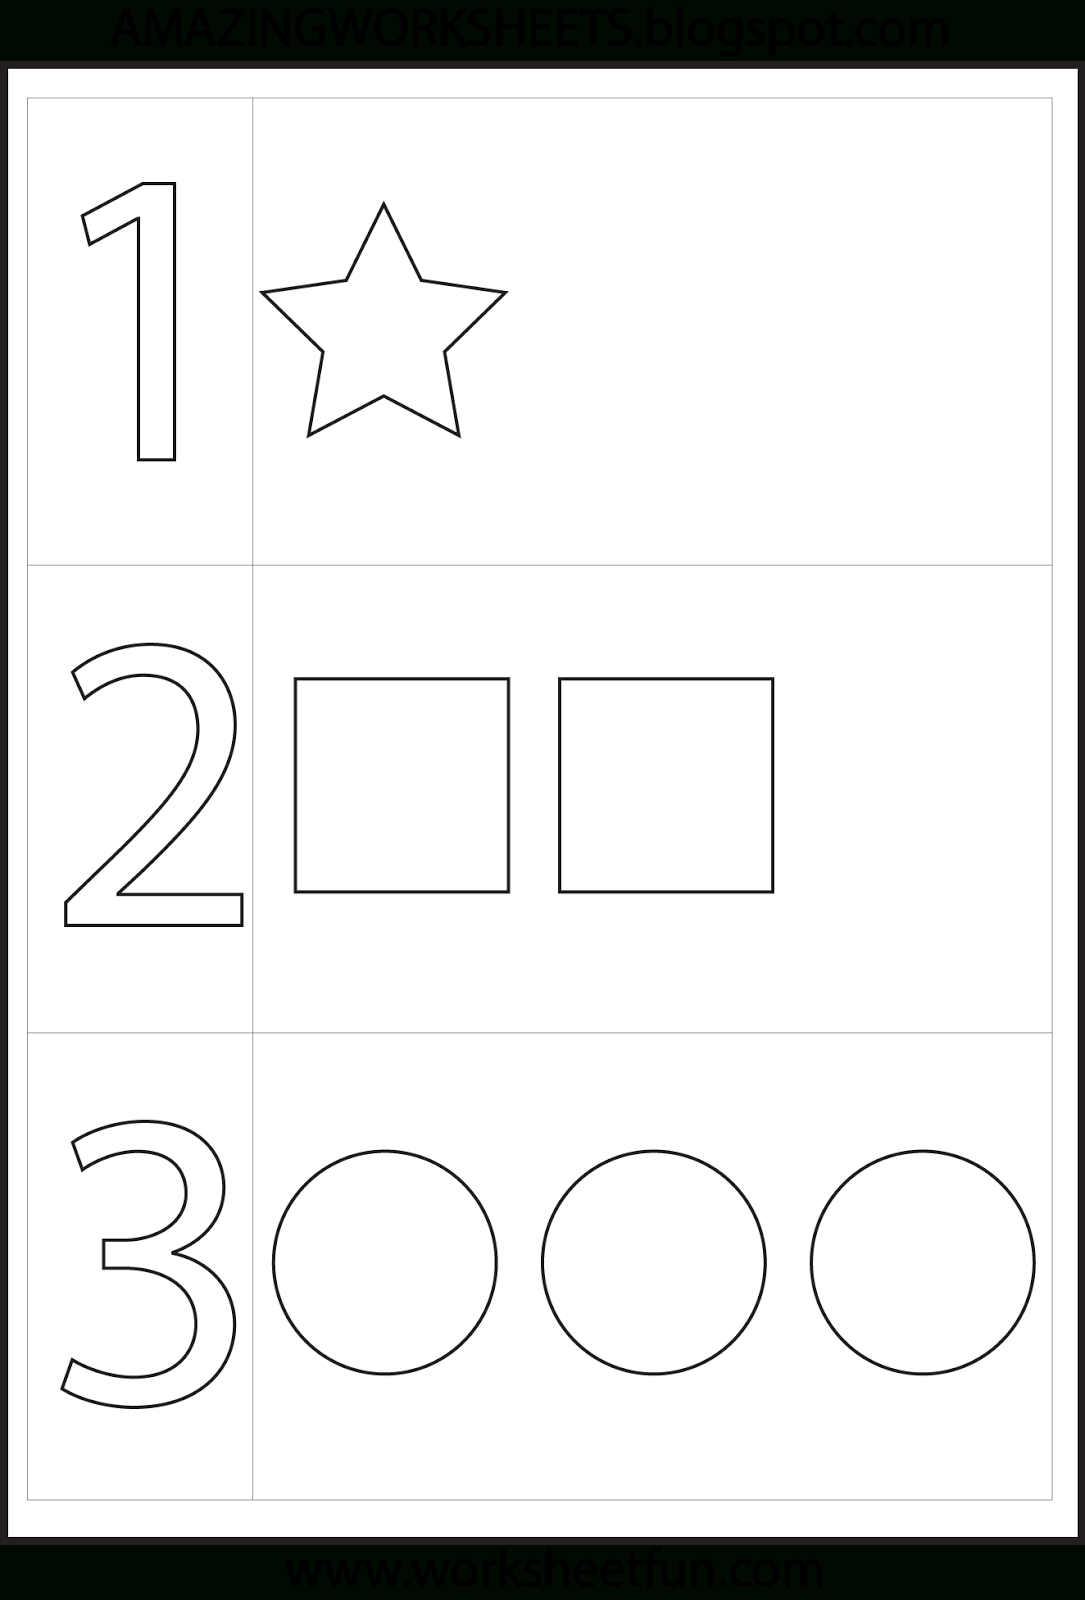 Preschool Number One Worksheet | Number 1 Preschool Worksheets - Free Printable Preschool Worksheets